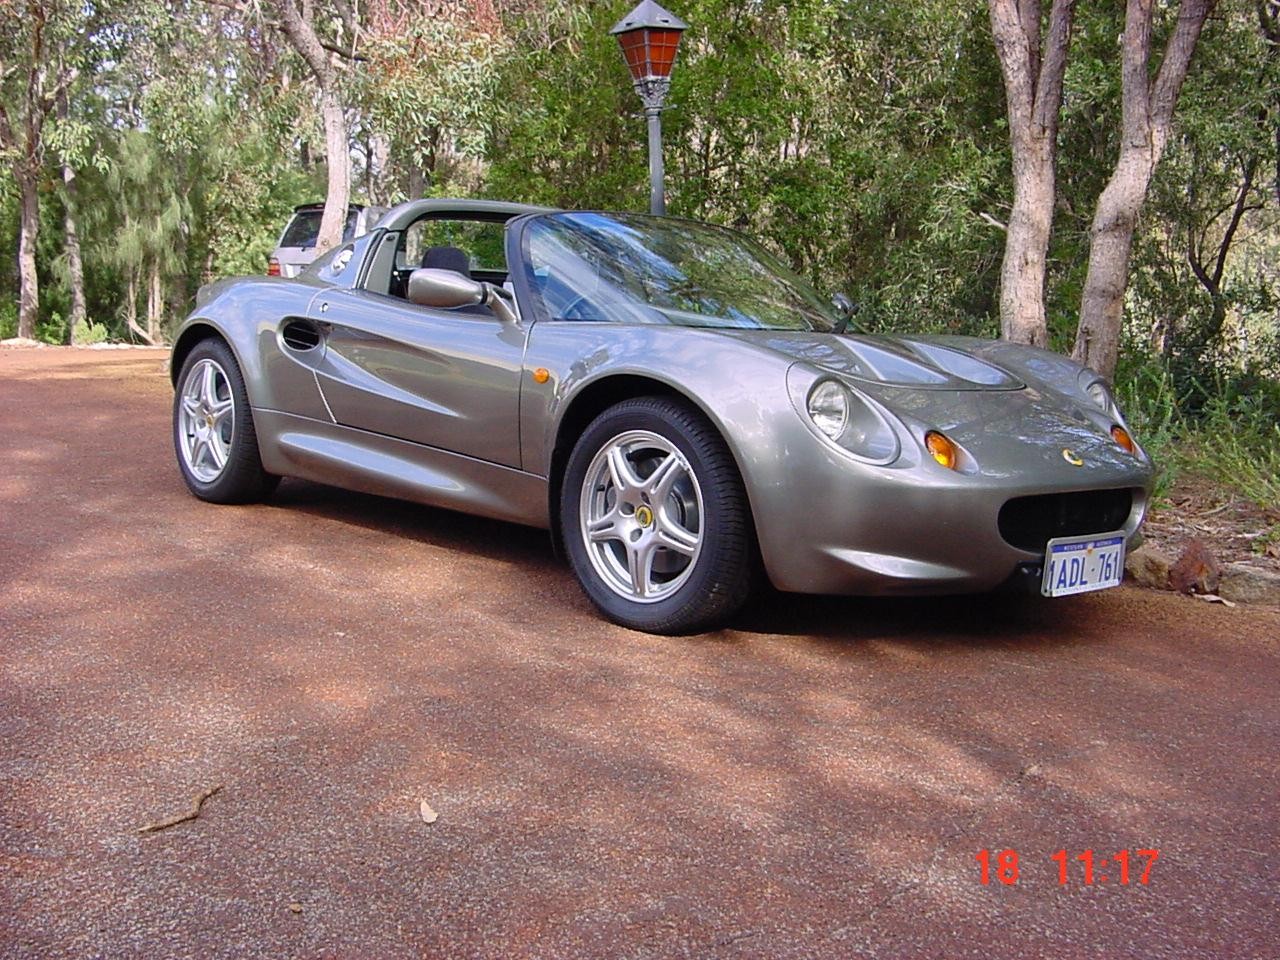 1998 Lotus Elise